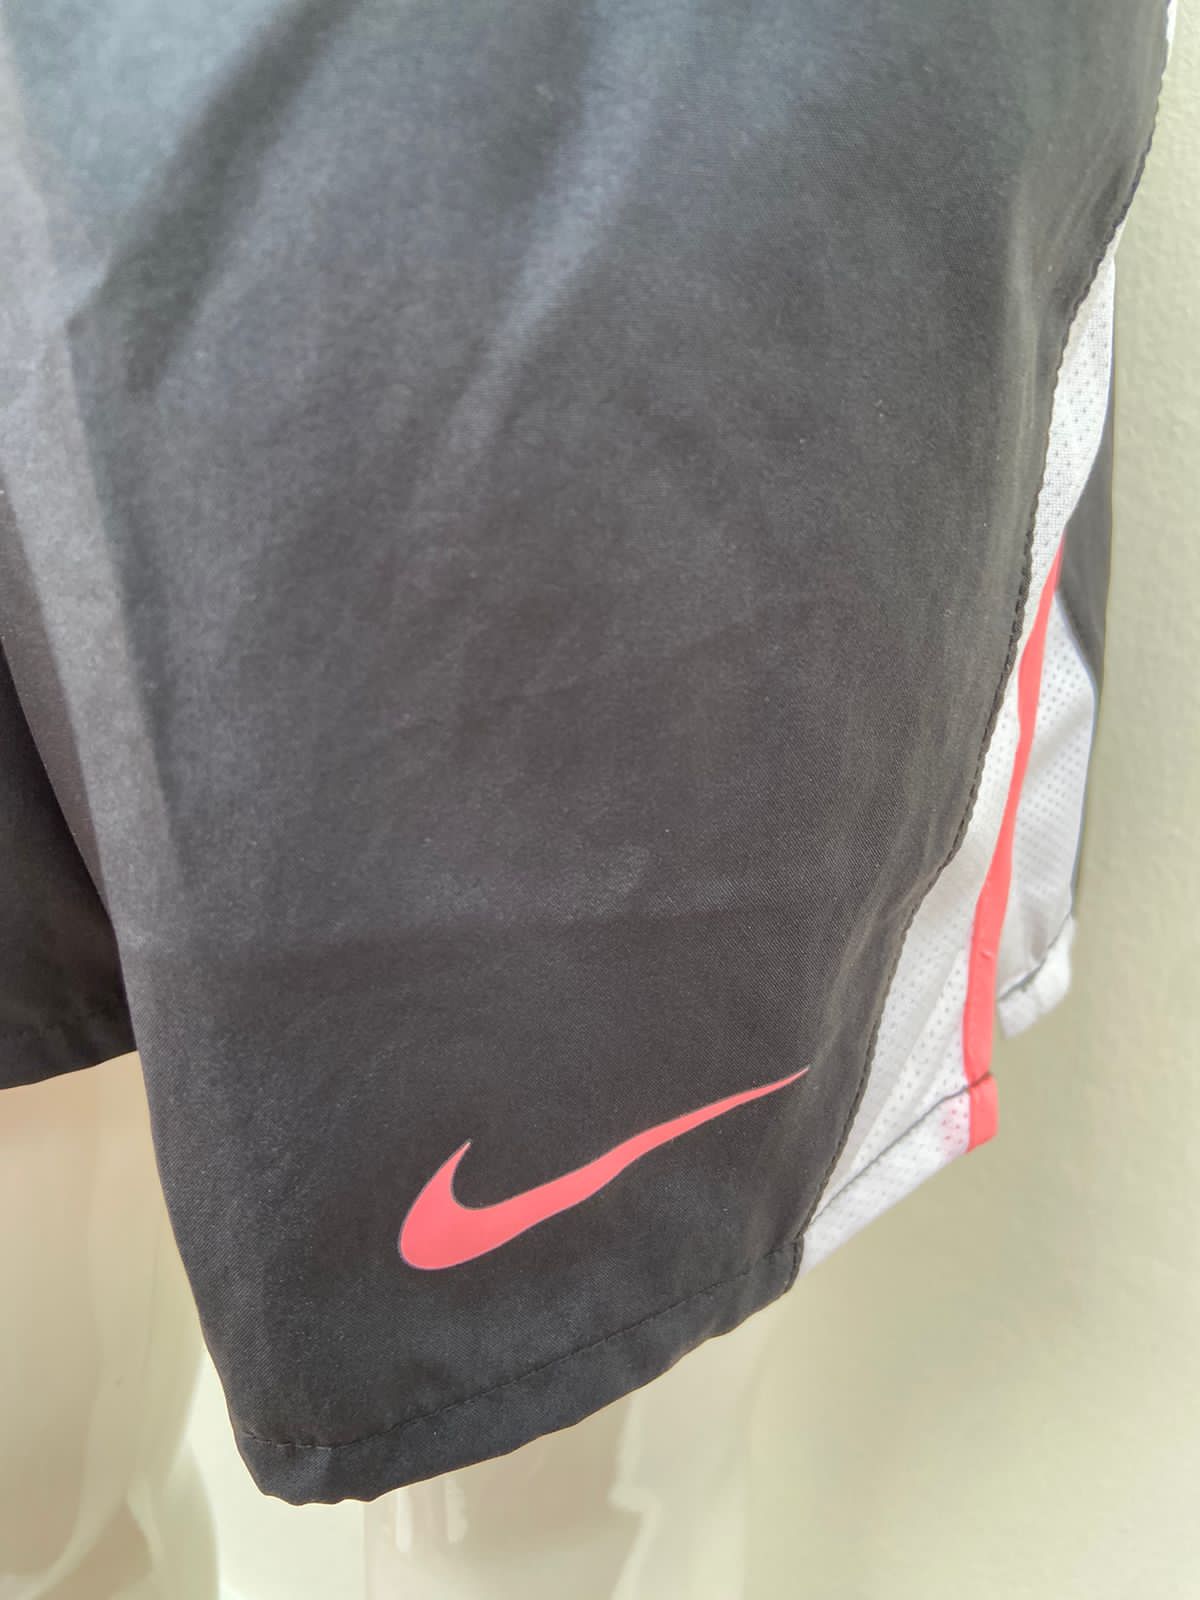 Short deportivo Nike Standard Fit original negro  con raya blanca y rosado  lados  lazo ajustable